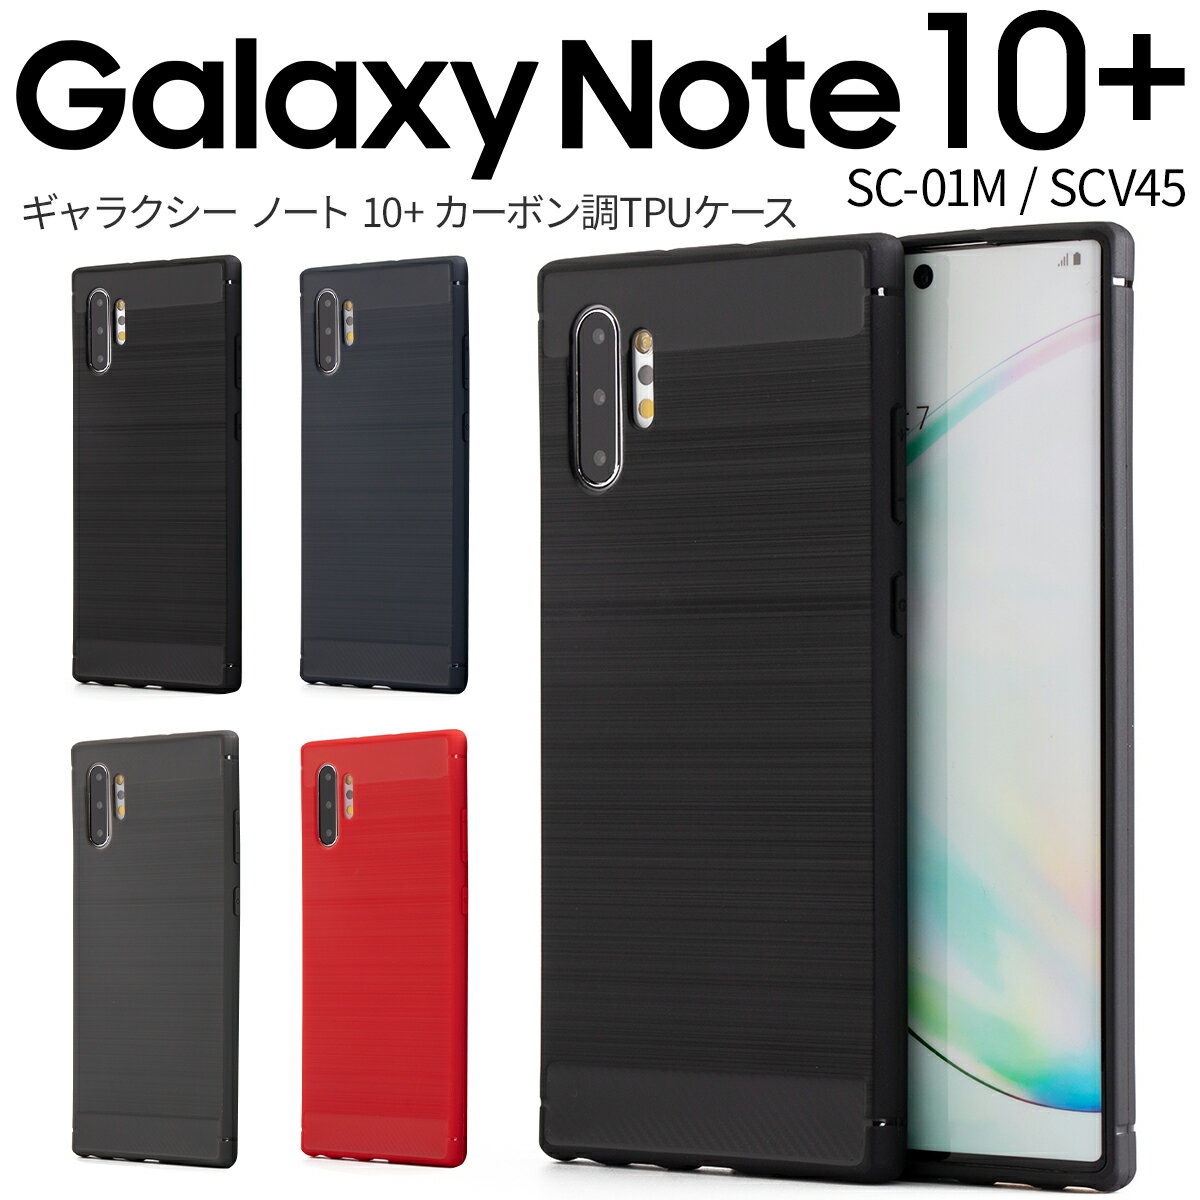 【最大30%offクーポン】Galaxy Note10+ ケース Galaxy Note10+ sc-01m ケース スマホケース 韓国 SC-01M SCV45 スマホ ケース カバー ギャラクシー ノート10プラス かっこいい おしゃれ 人気 おすすめ カーボン調TPUケース sale ソフトケース